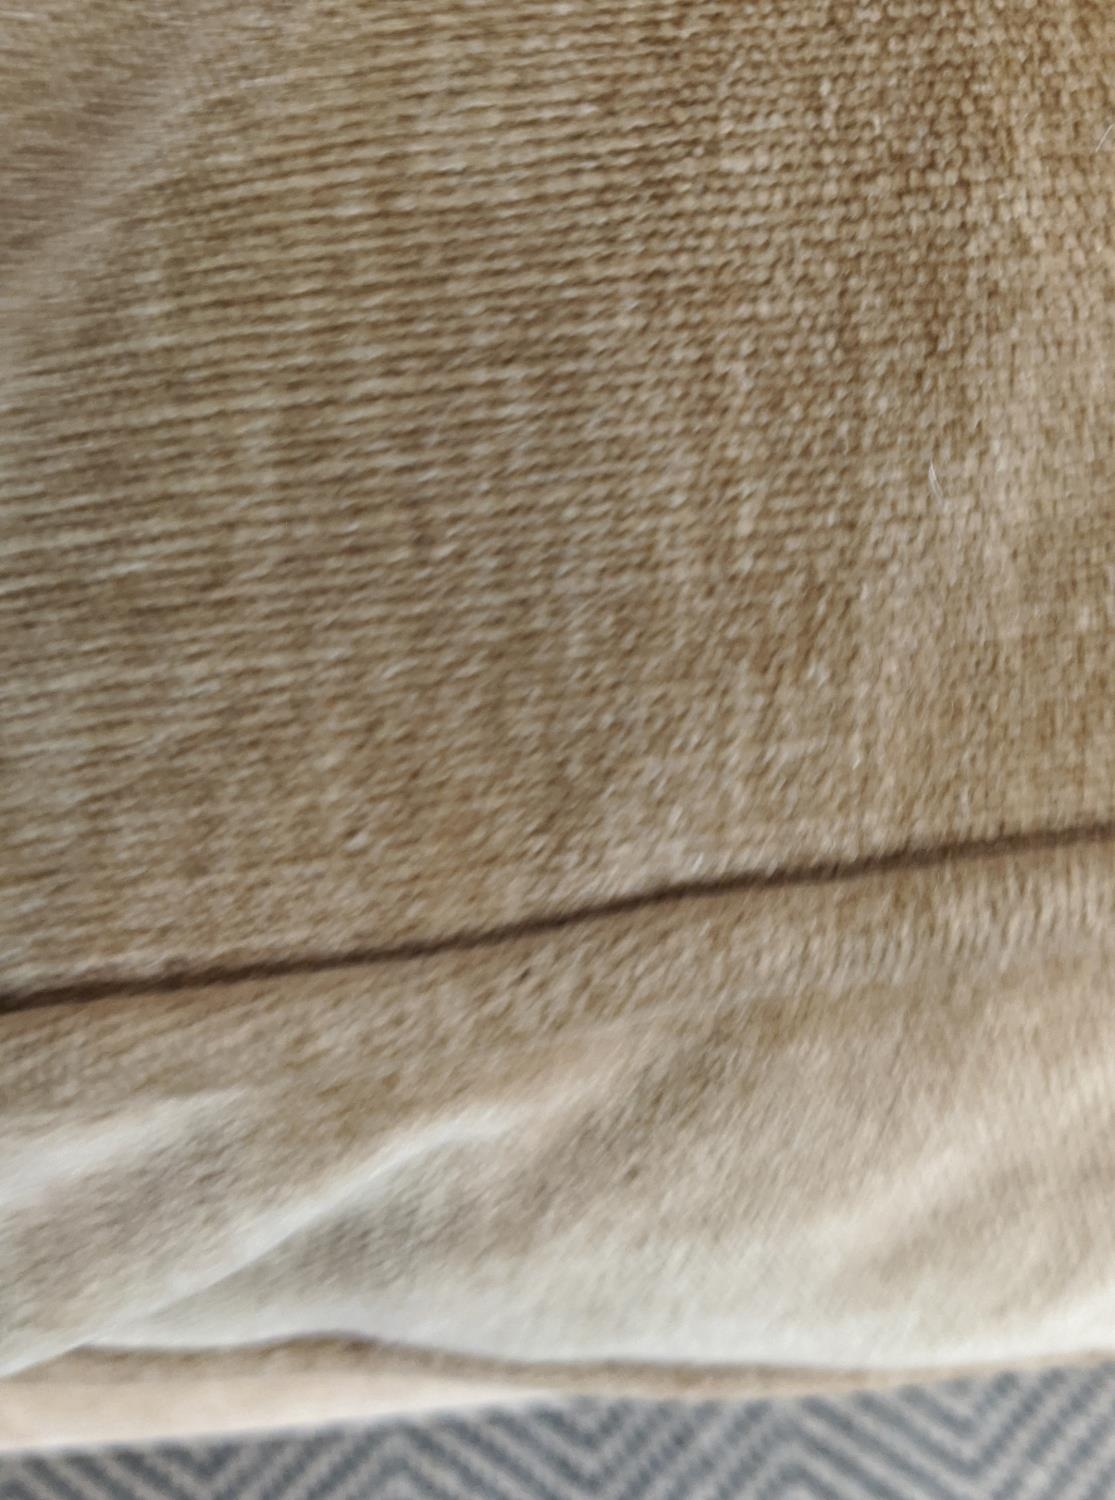 HOWARD STYLE SOFA, tan coloured velvet on brass castors, 77cm H x 165cm W x 97cm D. - Image 10 of 10